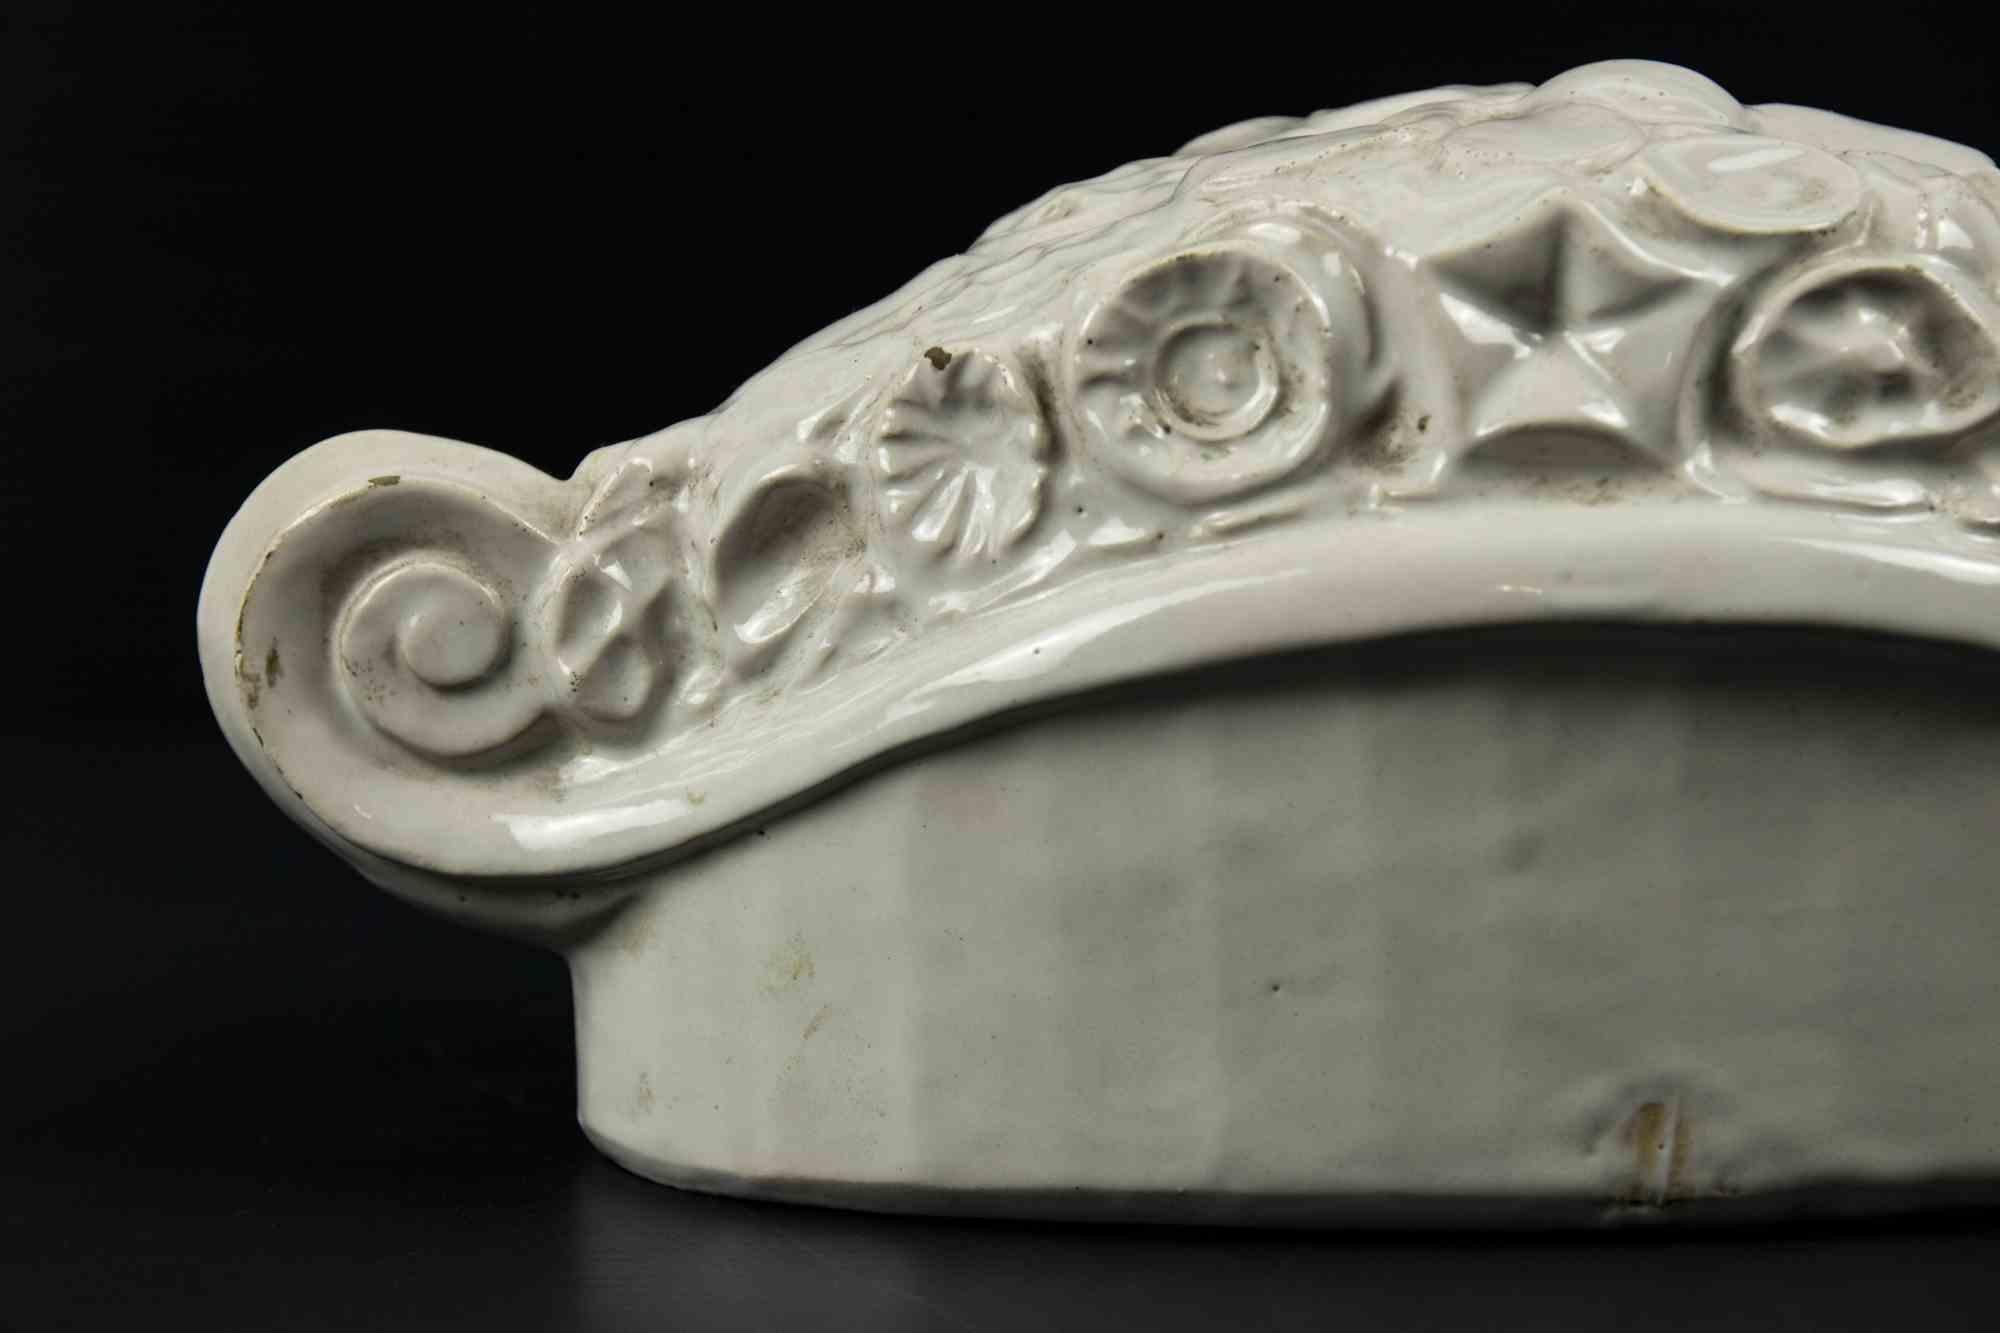 Vintage Keramik Tafelaufsatz ist ein originelles modernes Objekt in der Mitte des 20. Jahrhunderts realisiert.

Original weiße Keramik.

Hergestellt in Italien.

Schönes Objekt in Italien mit weißer Keramik mit Strudeln auf der linken und auf